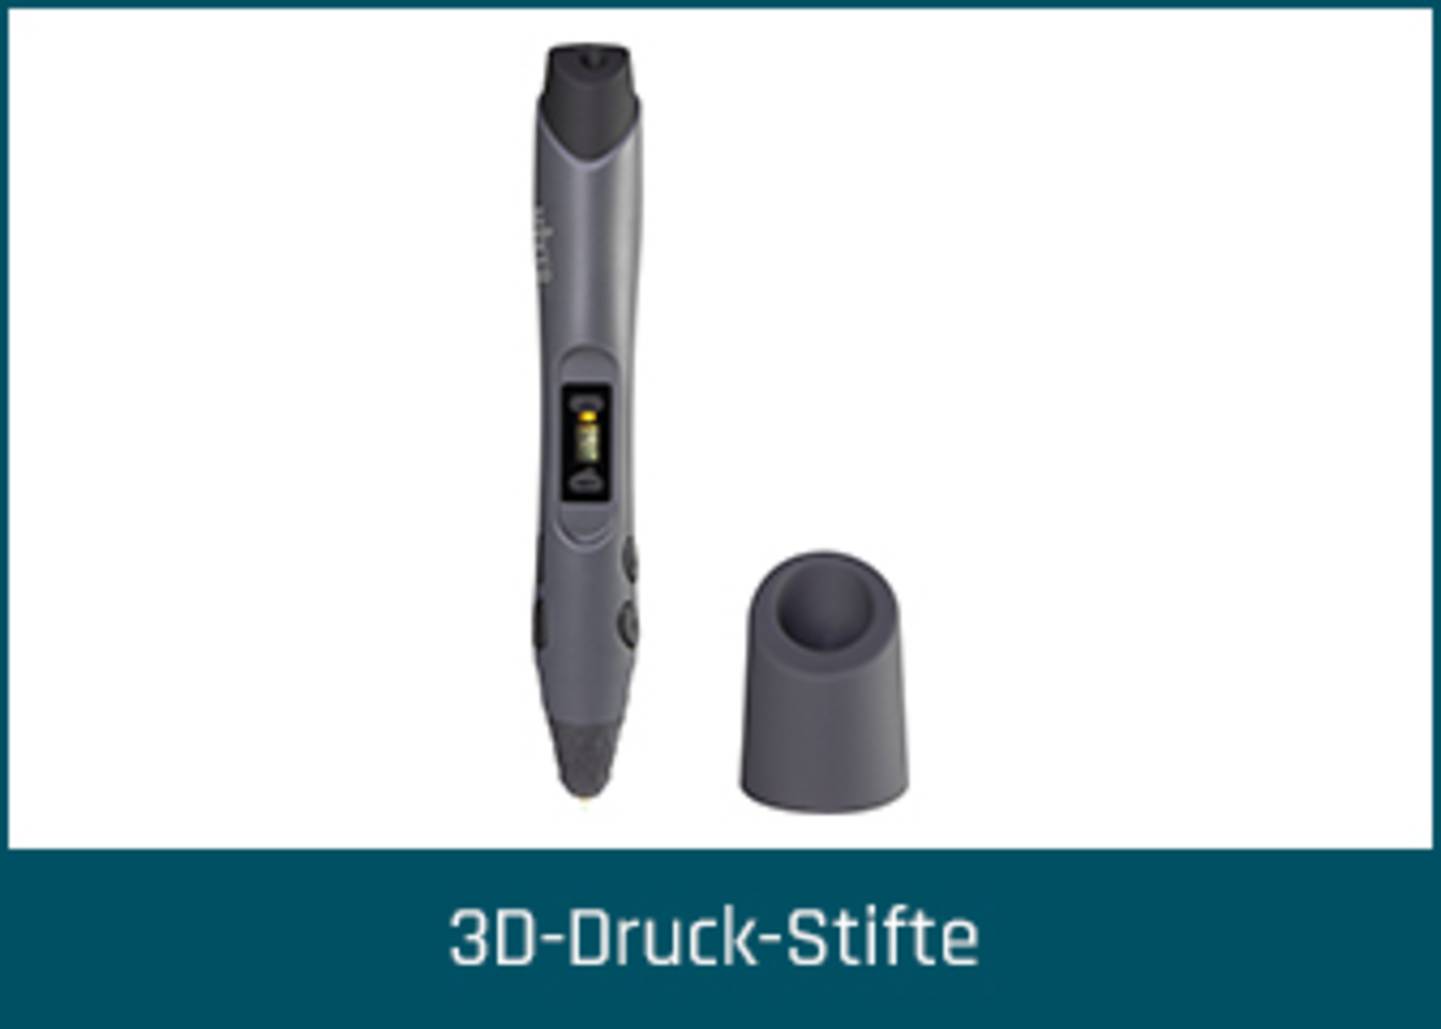 3D-Druck-Stifte